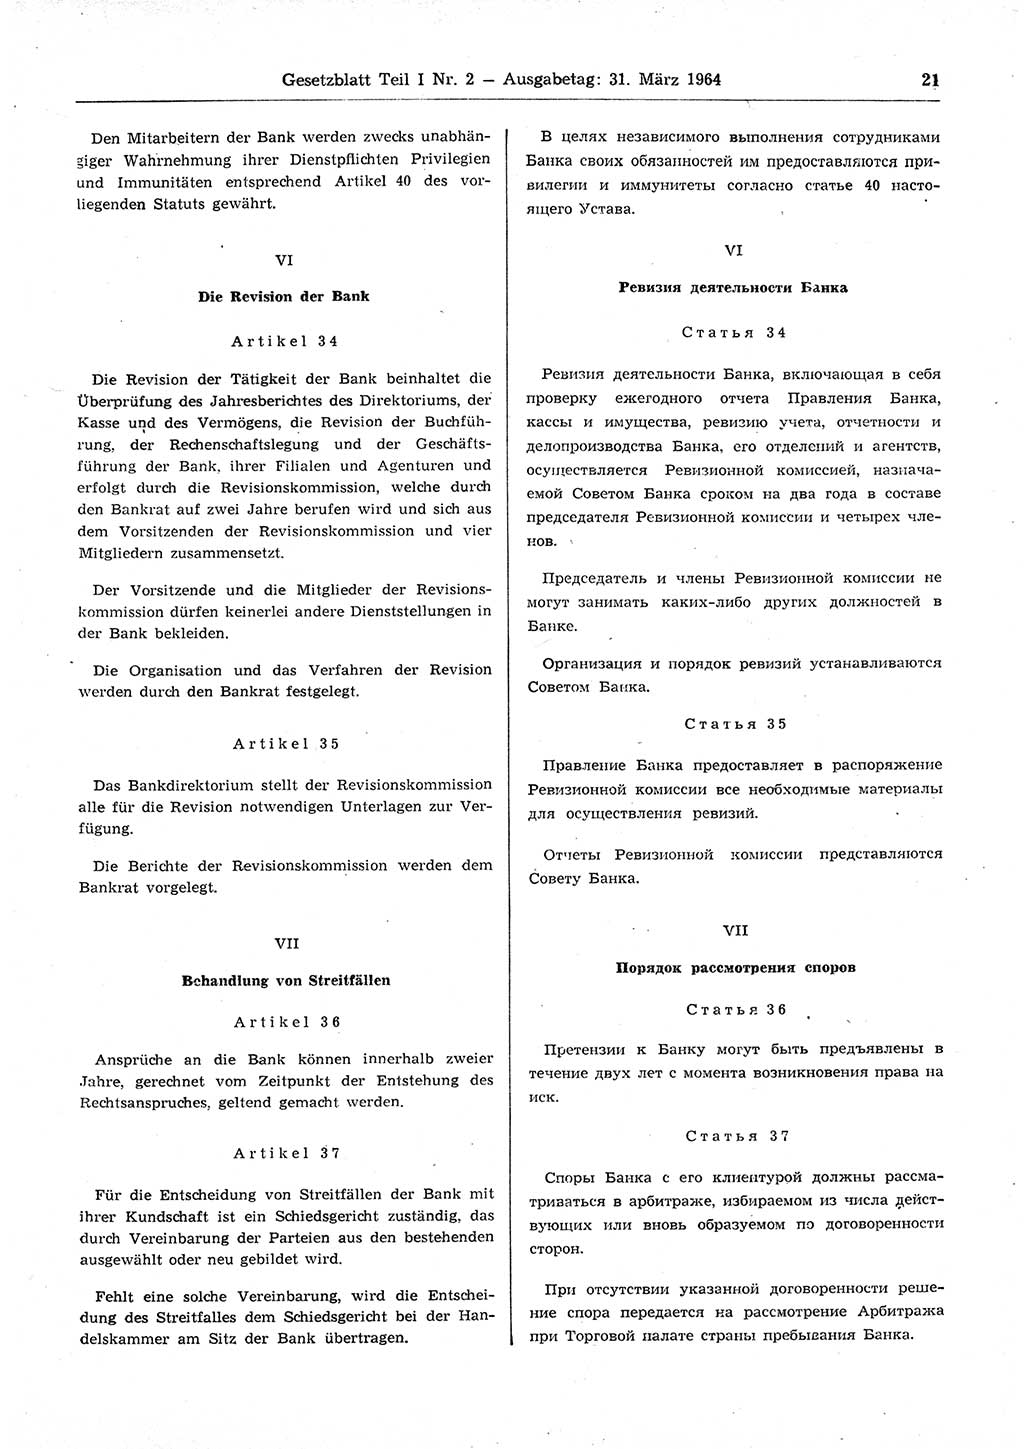 Gesetzblatt (GBl.) der Deutschen Demokratischen Republik (DDR) Teil Ⅰ 1964, Seite 21 (GBl. DDR Ⅰ 1964, S. 21)